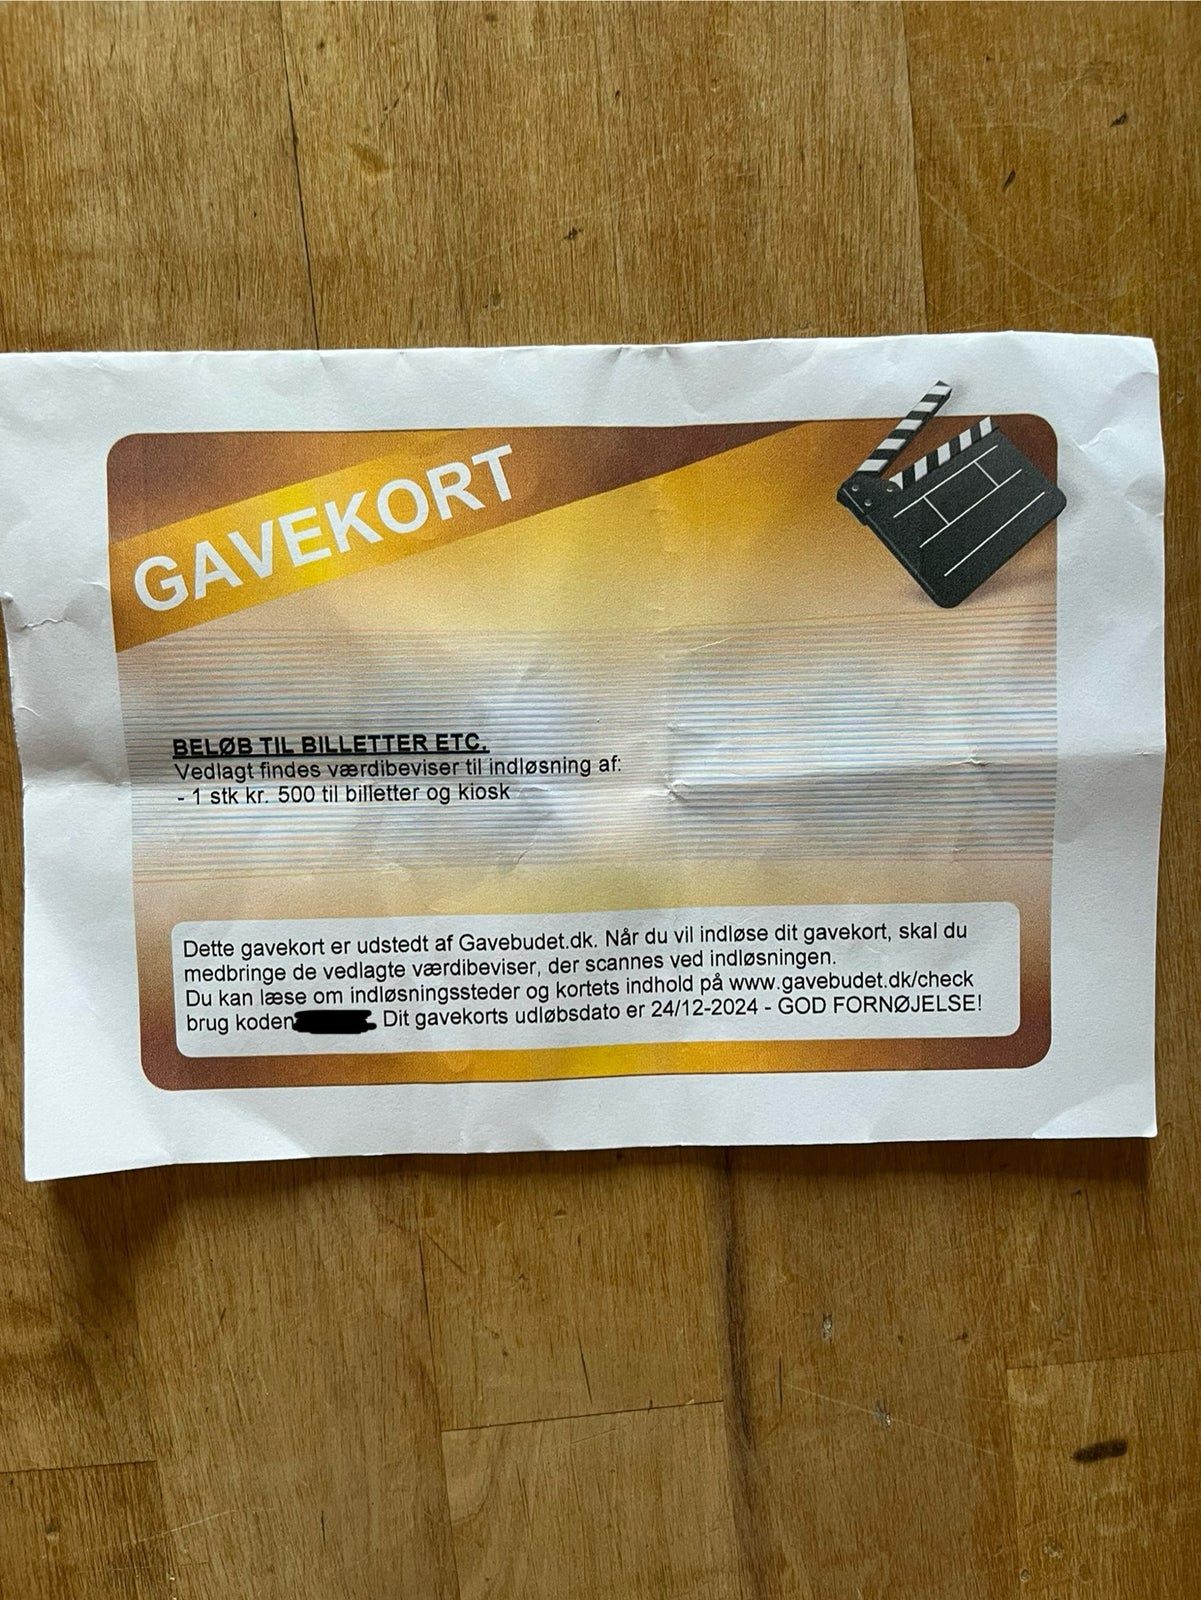 Biograf gavekort fra Gavebudet.dk 

Pålydende 5...